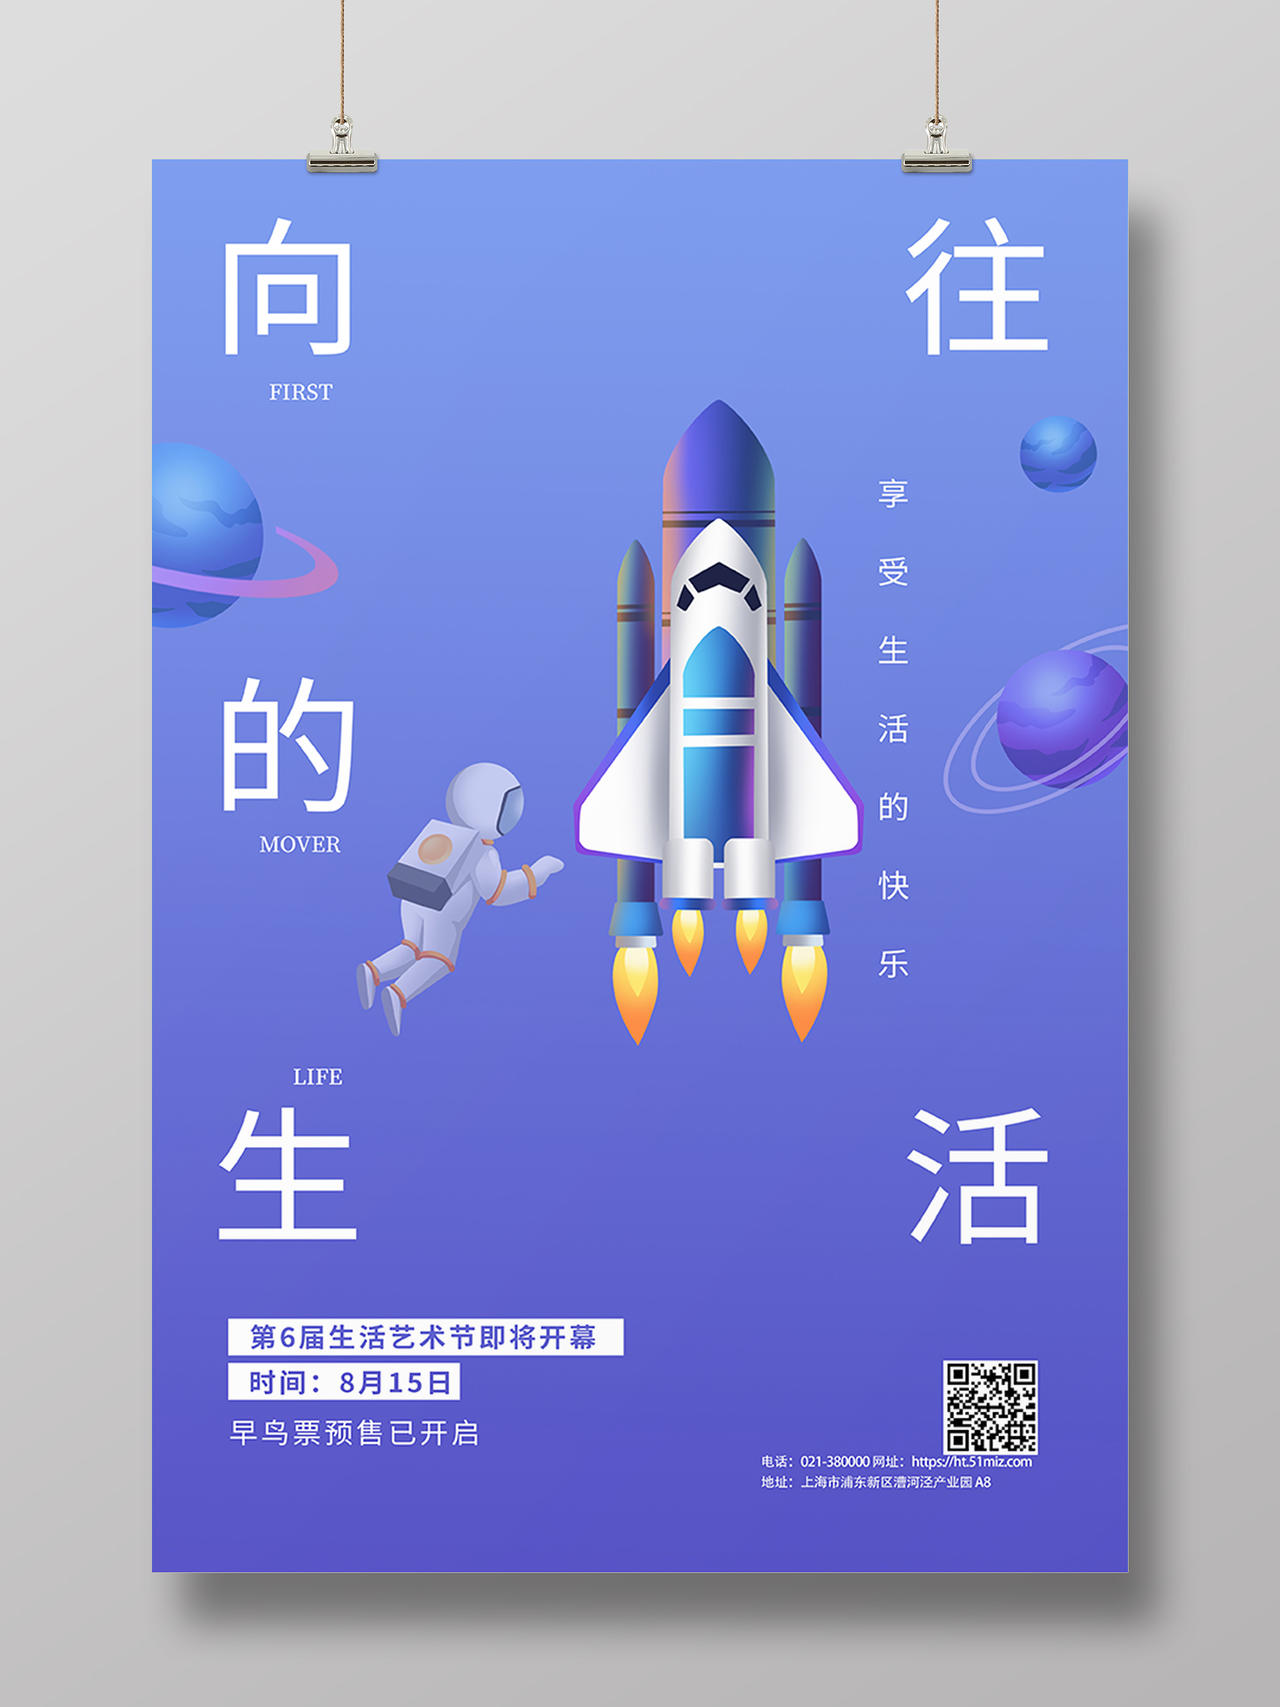 蓝色简约清新生活艺术节宇宙航天梦宣传海报展览